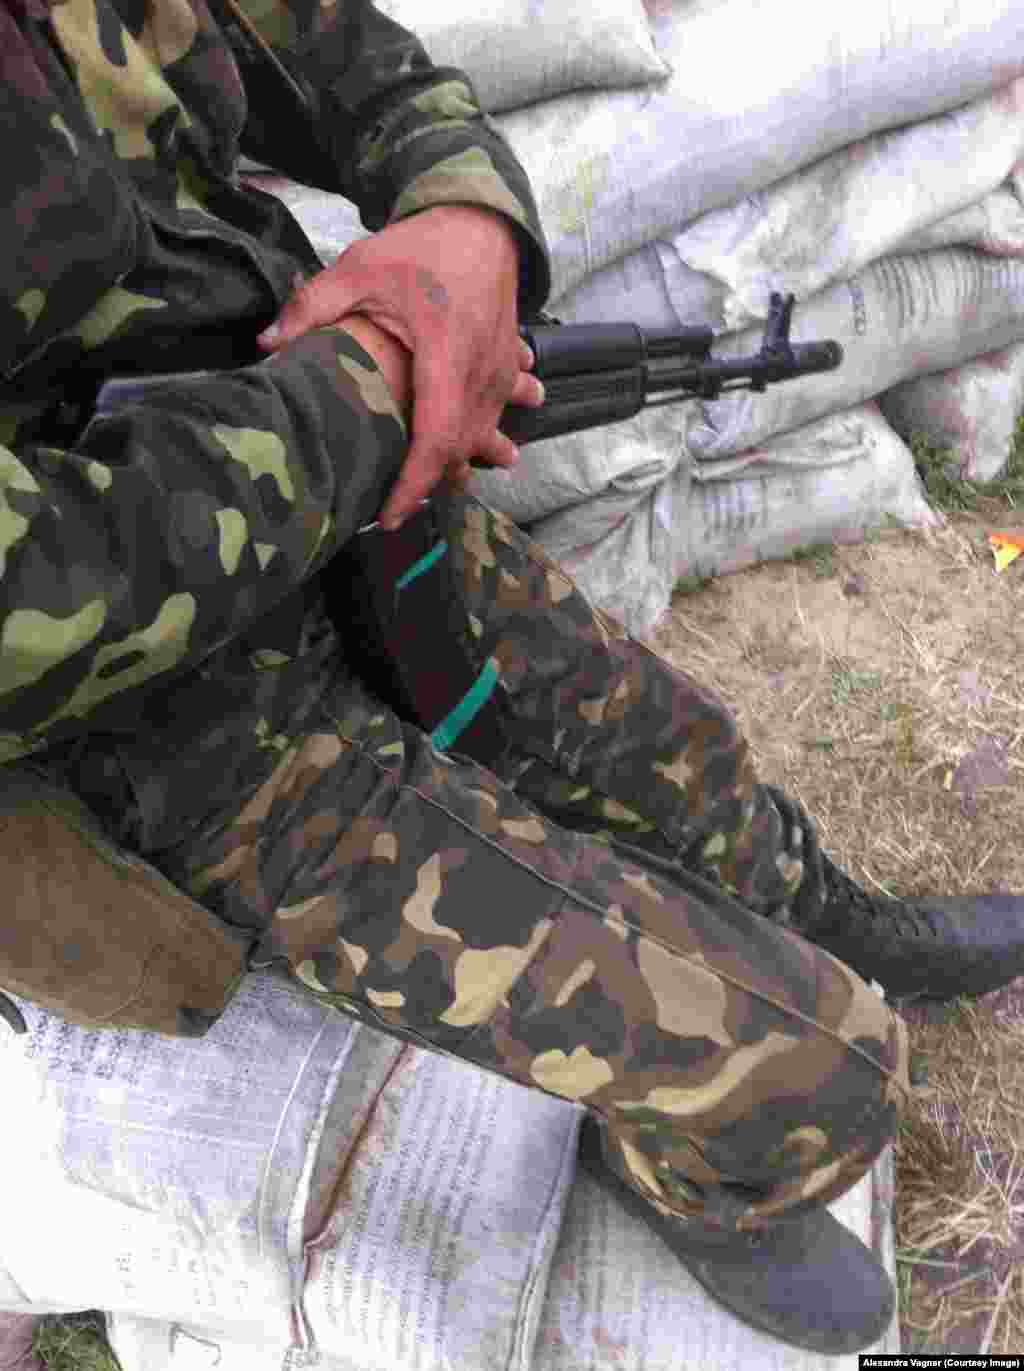 Украинский военный на блокпосте в Александровке, Донецкая область. Лицо он просил не фотографировать